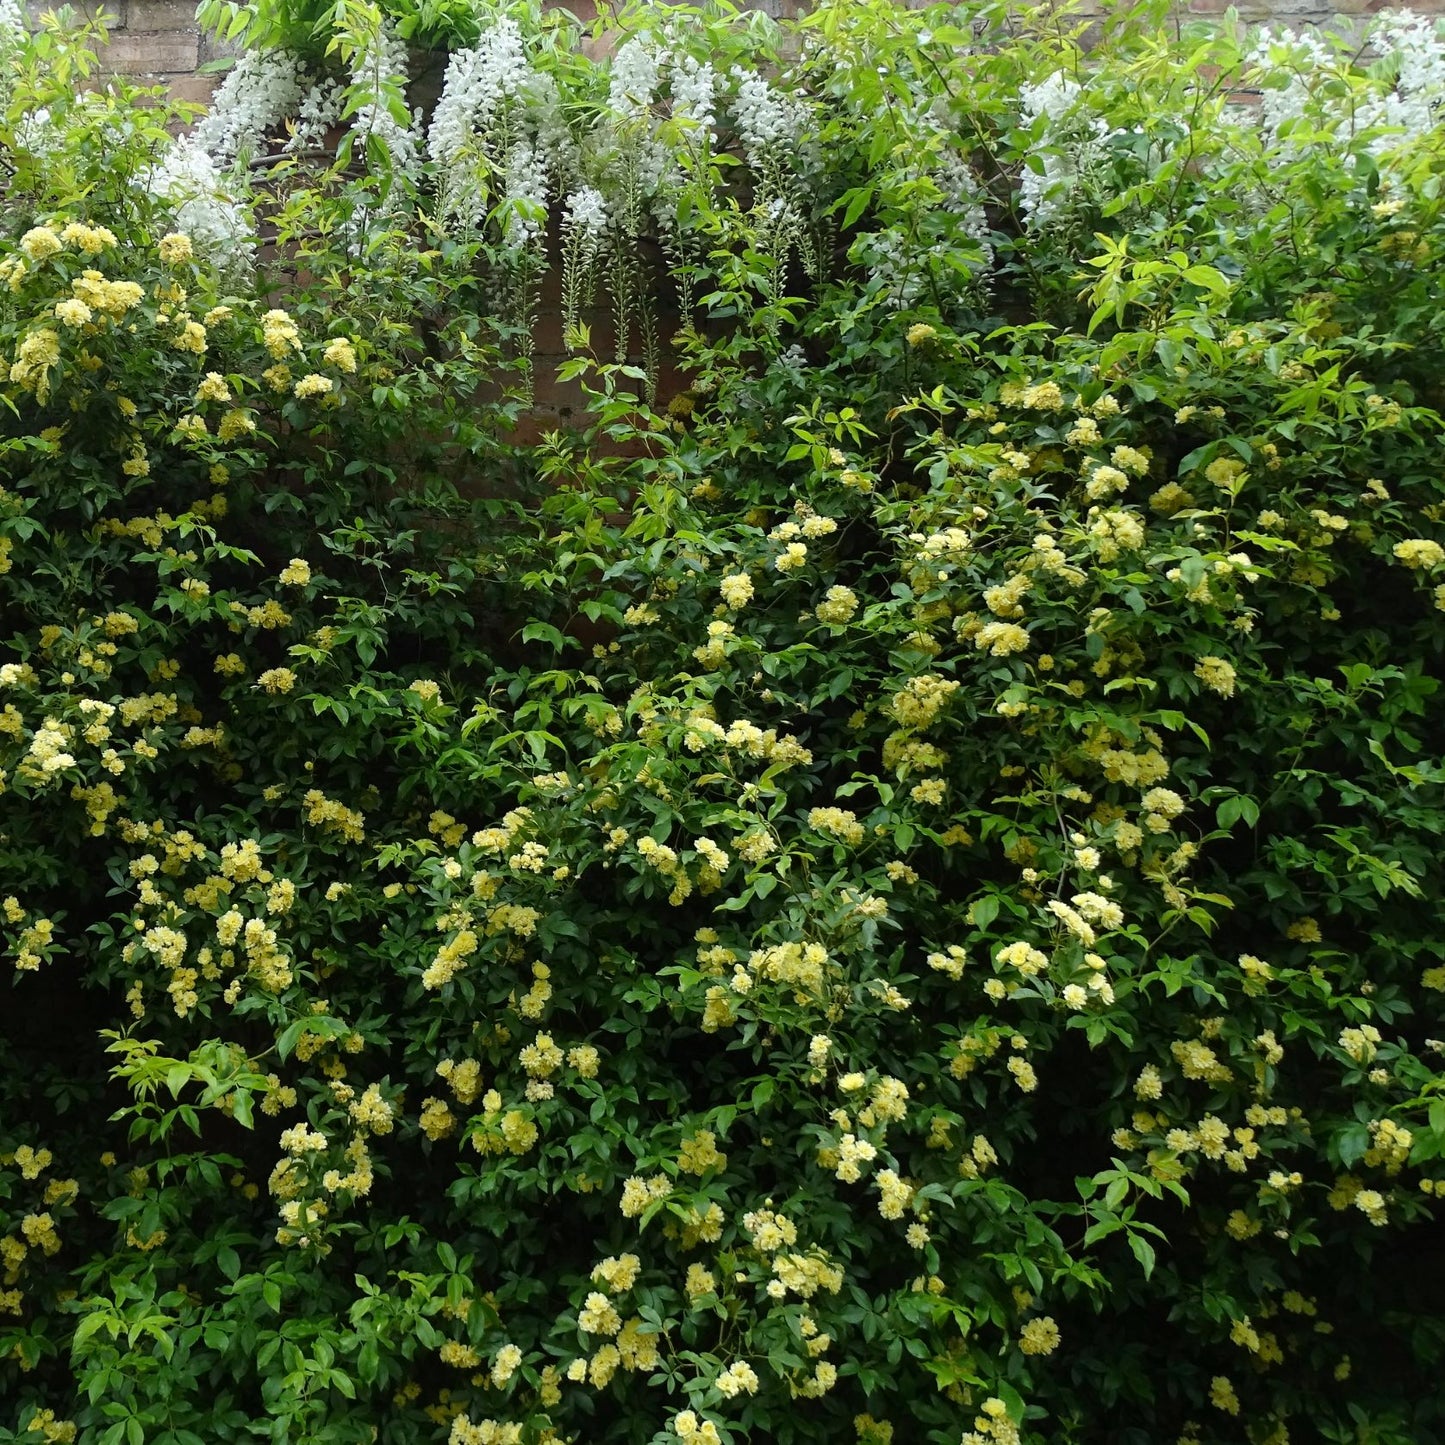 Rosa banksiae 'Lutea' / Yellow Banksia rose